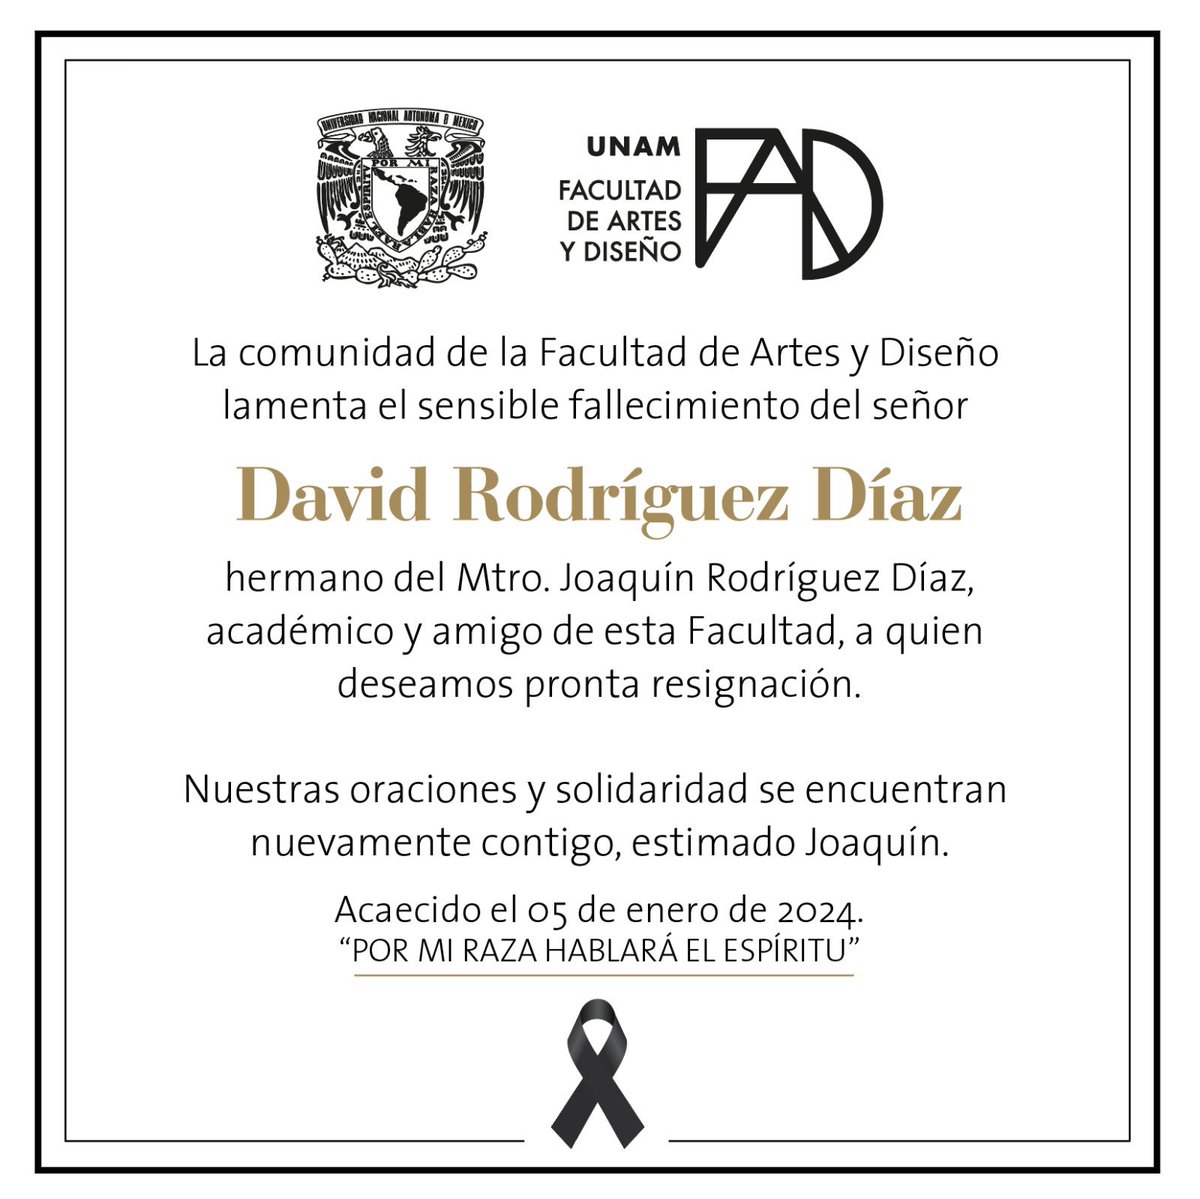 Lamentamos el sensible fallecimiento de David Rodríguez Díaz, hermano del Mtro. Joaquín Rodríguez. Estamos contigo en esta irreparable pérdida.